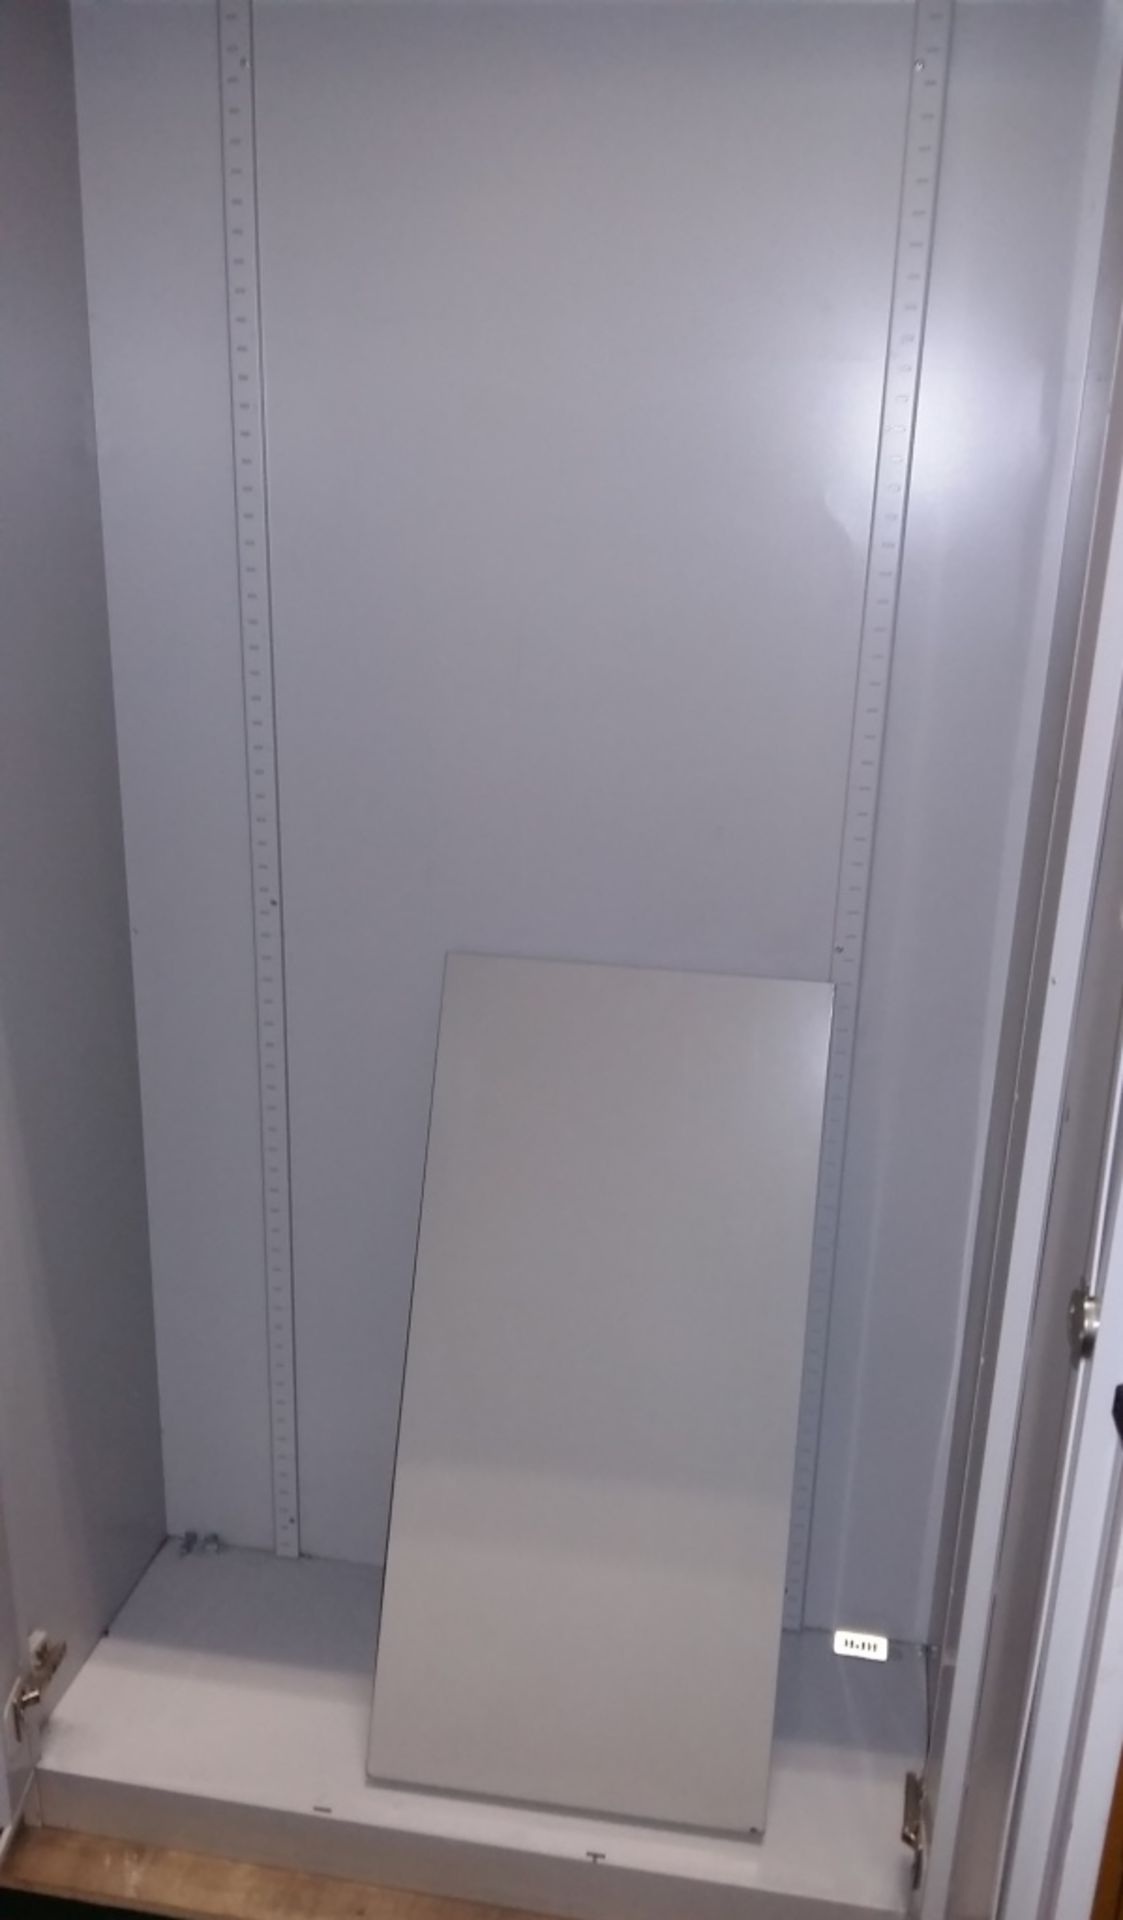 2 door cabinet - Image 2 of 2